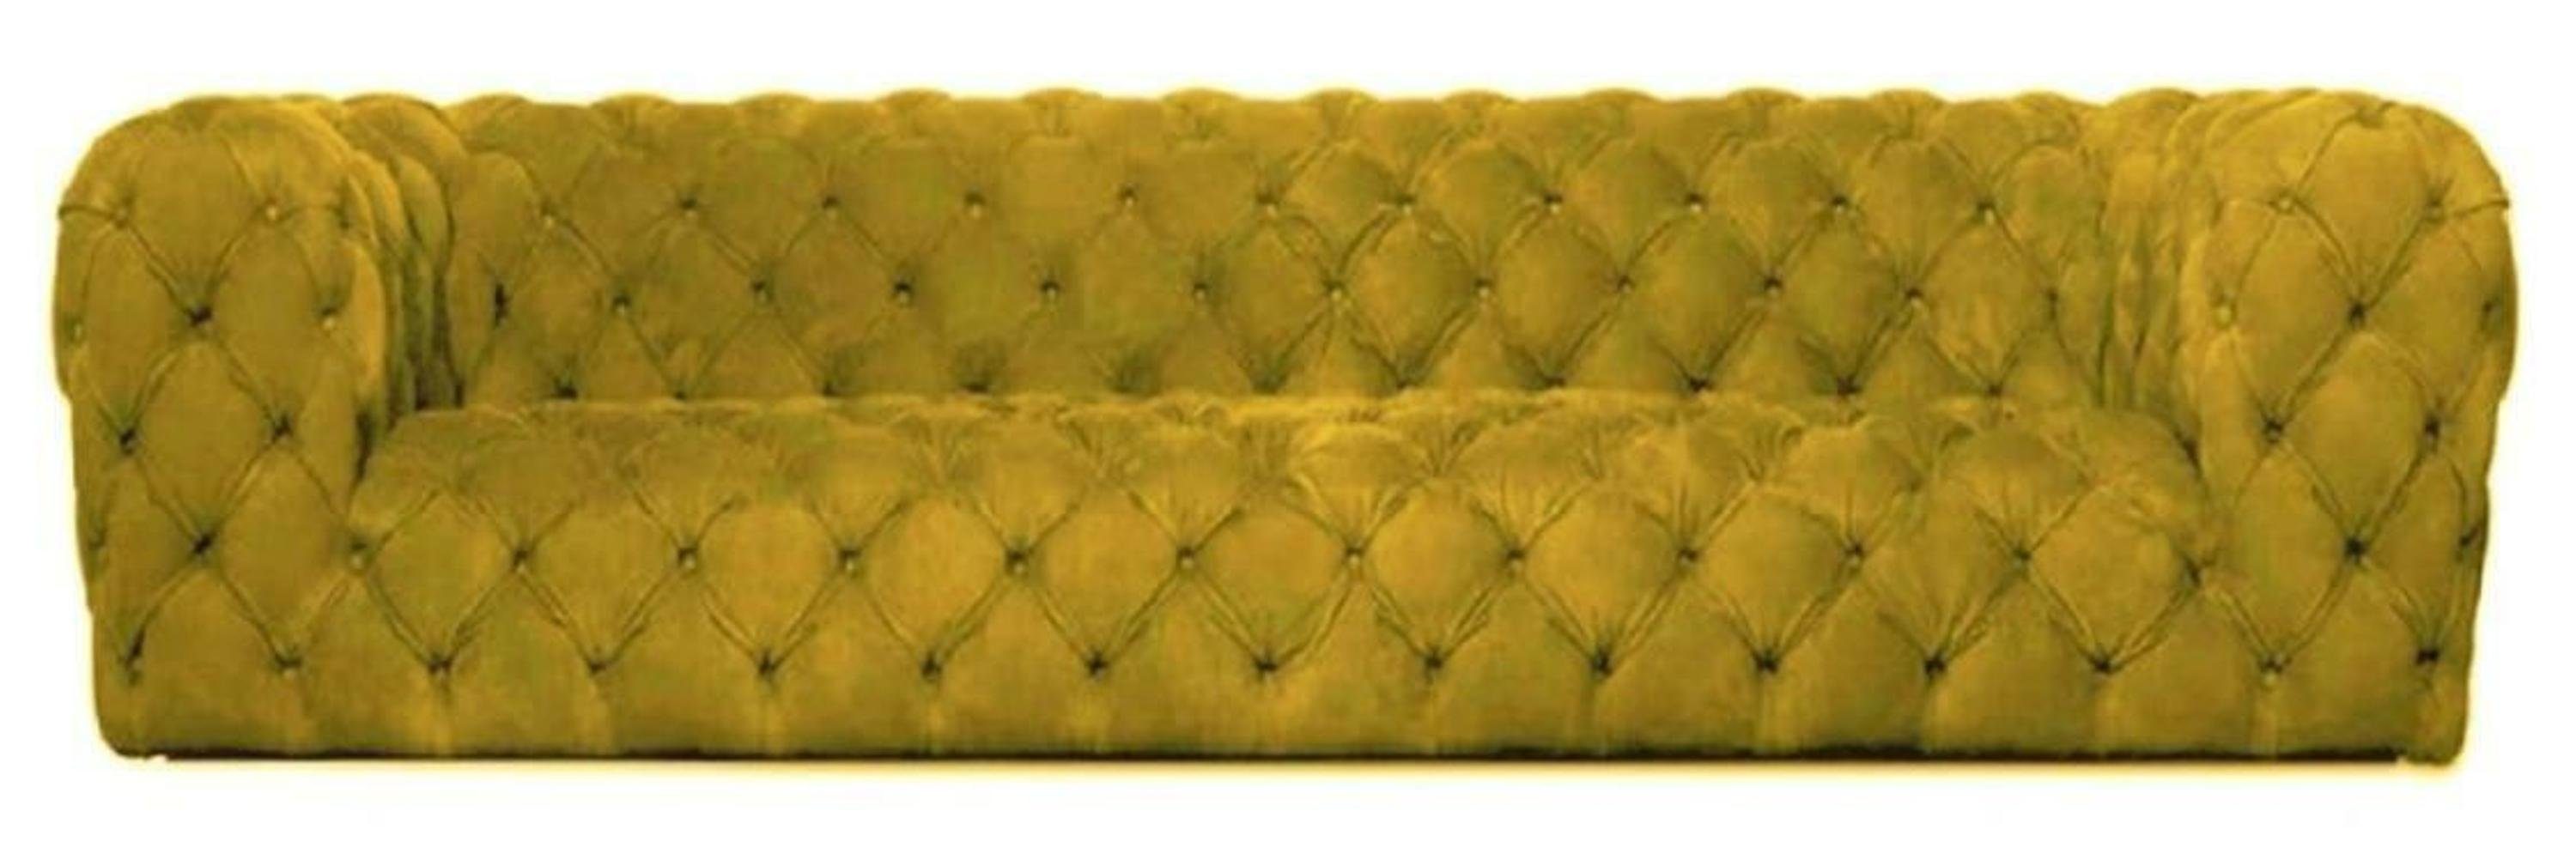 JVmoebel Chesterfield-Sofa, Gelbe Chesterfield Couch Viersitzer xxl big sofa gemütliche